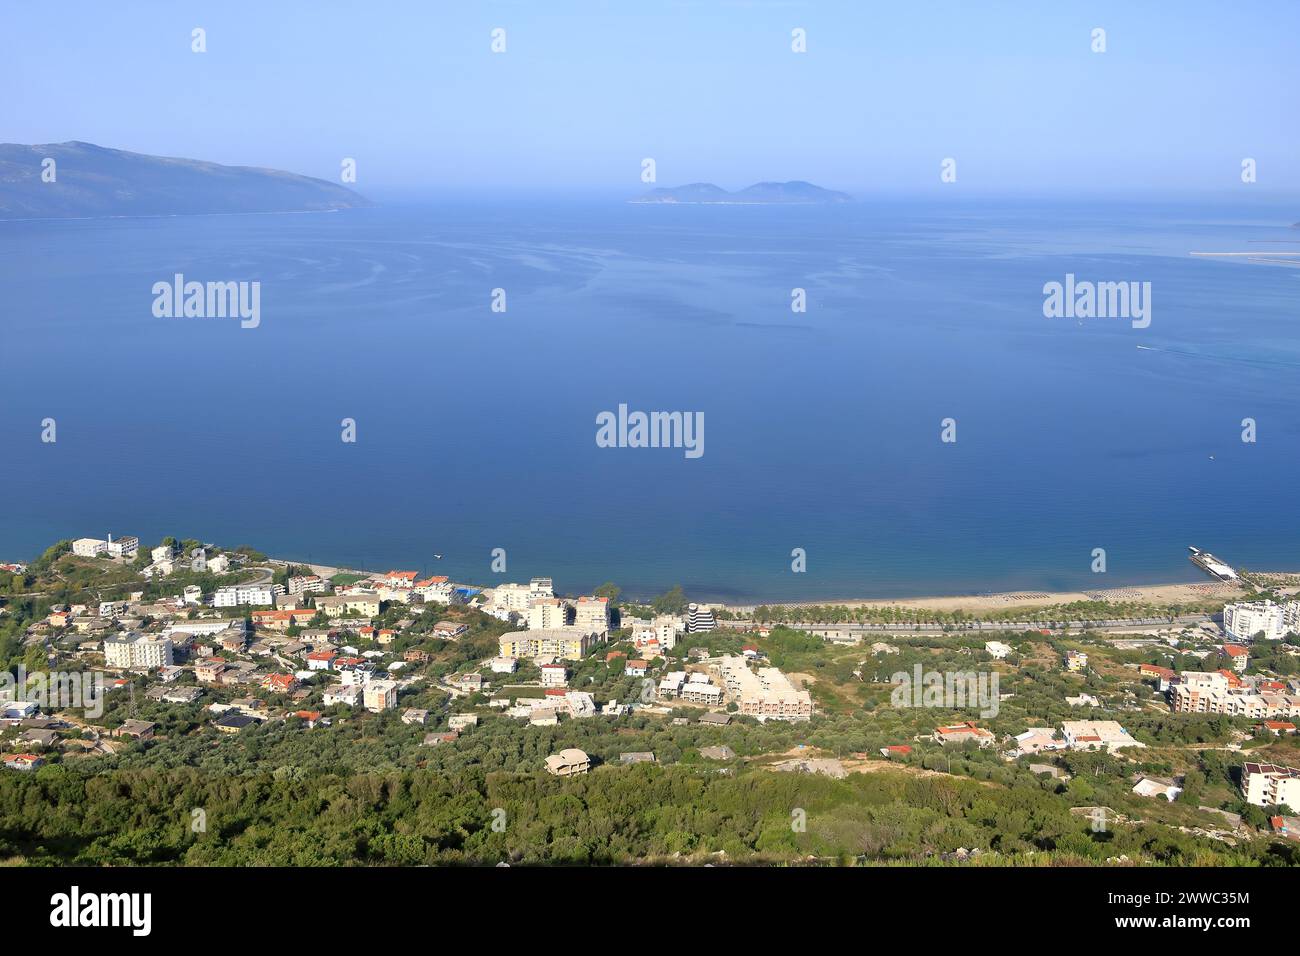 Ciudad turística de Vlora, terraplén de la ciudad, playas y el mar Adriático en Albania Foto de stock